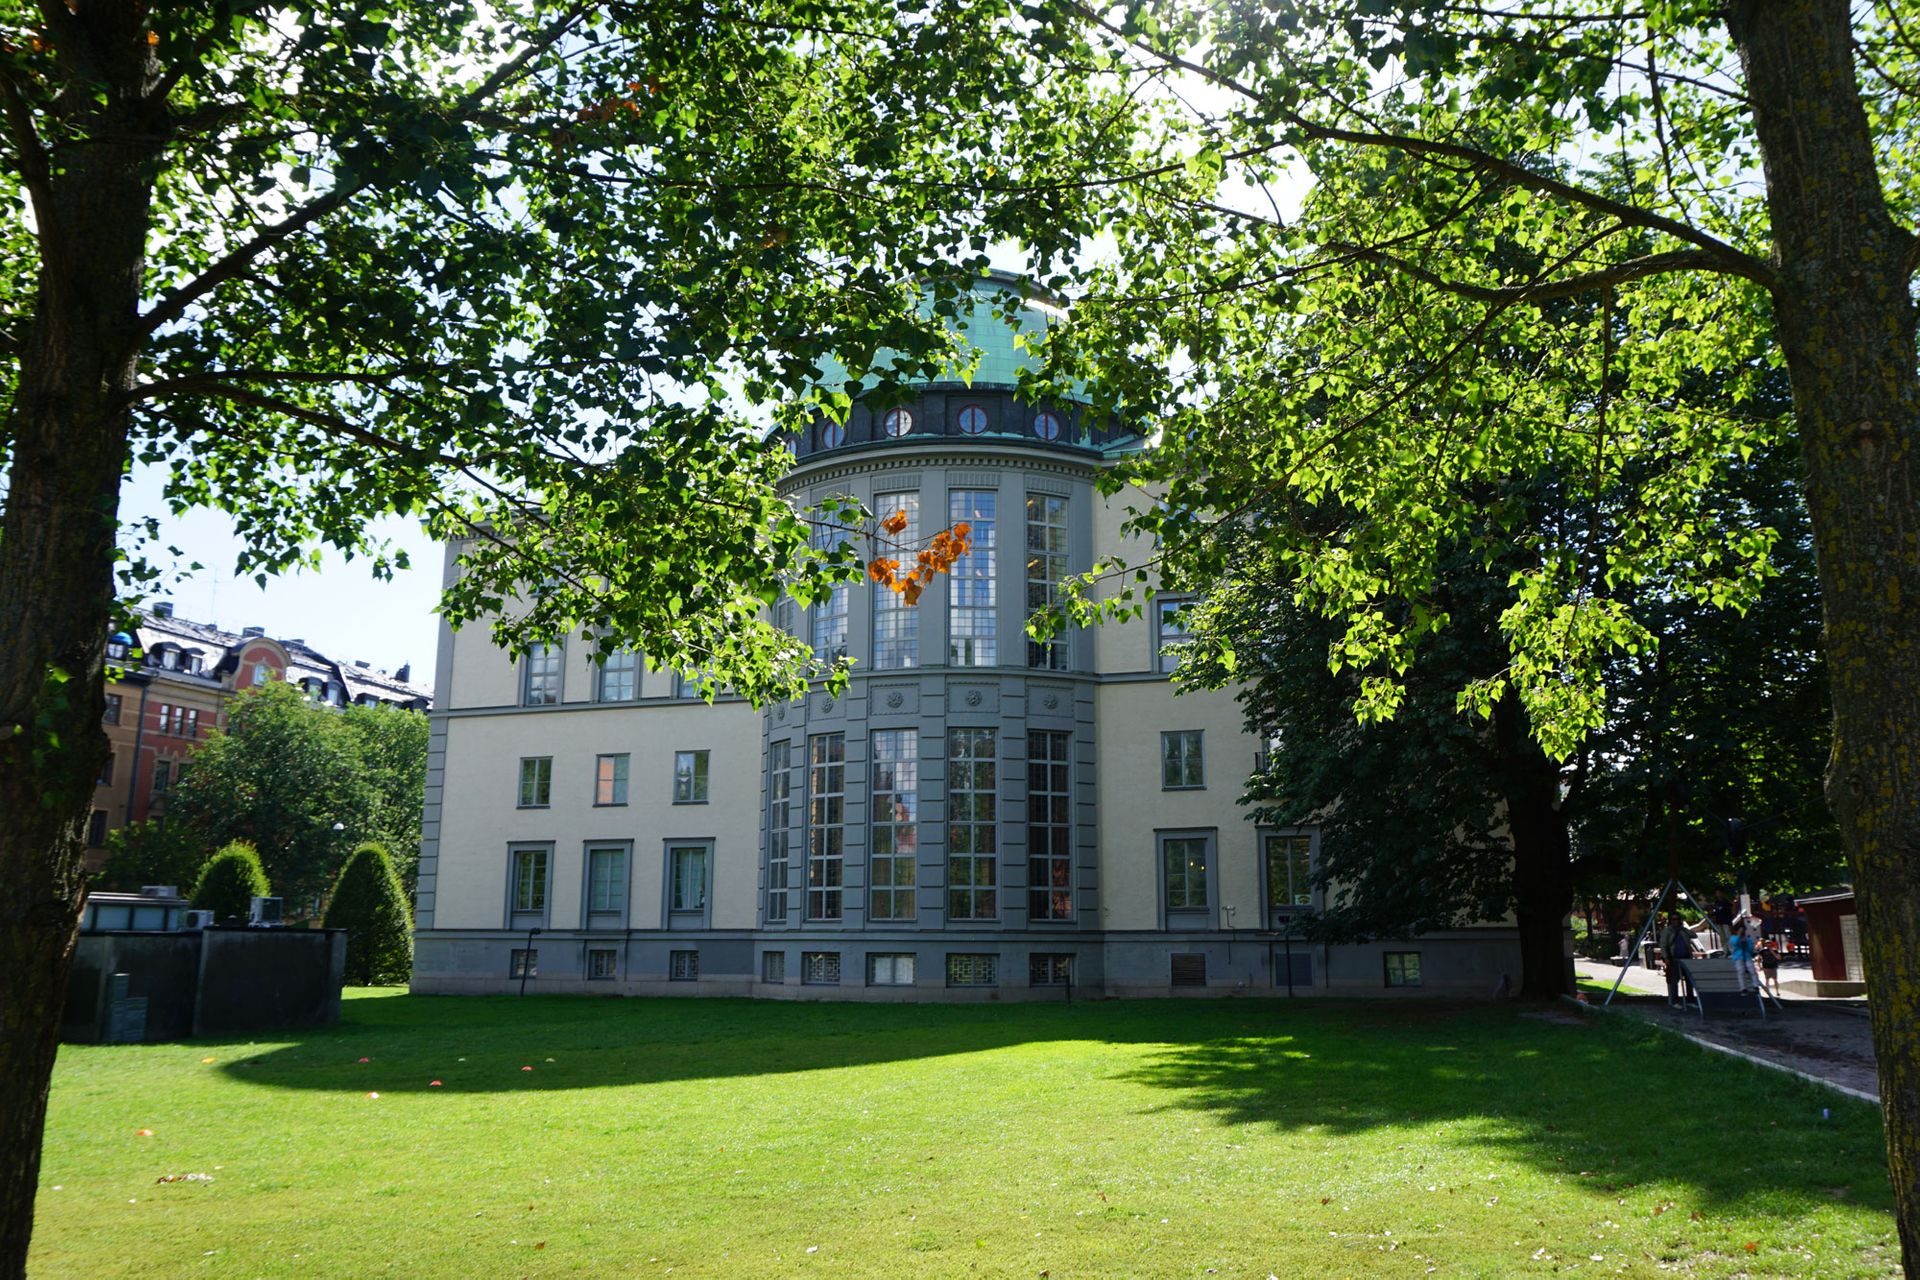 My university, Stockholm School of Economics